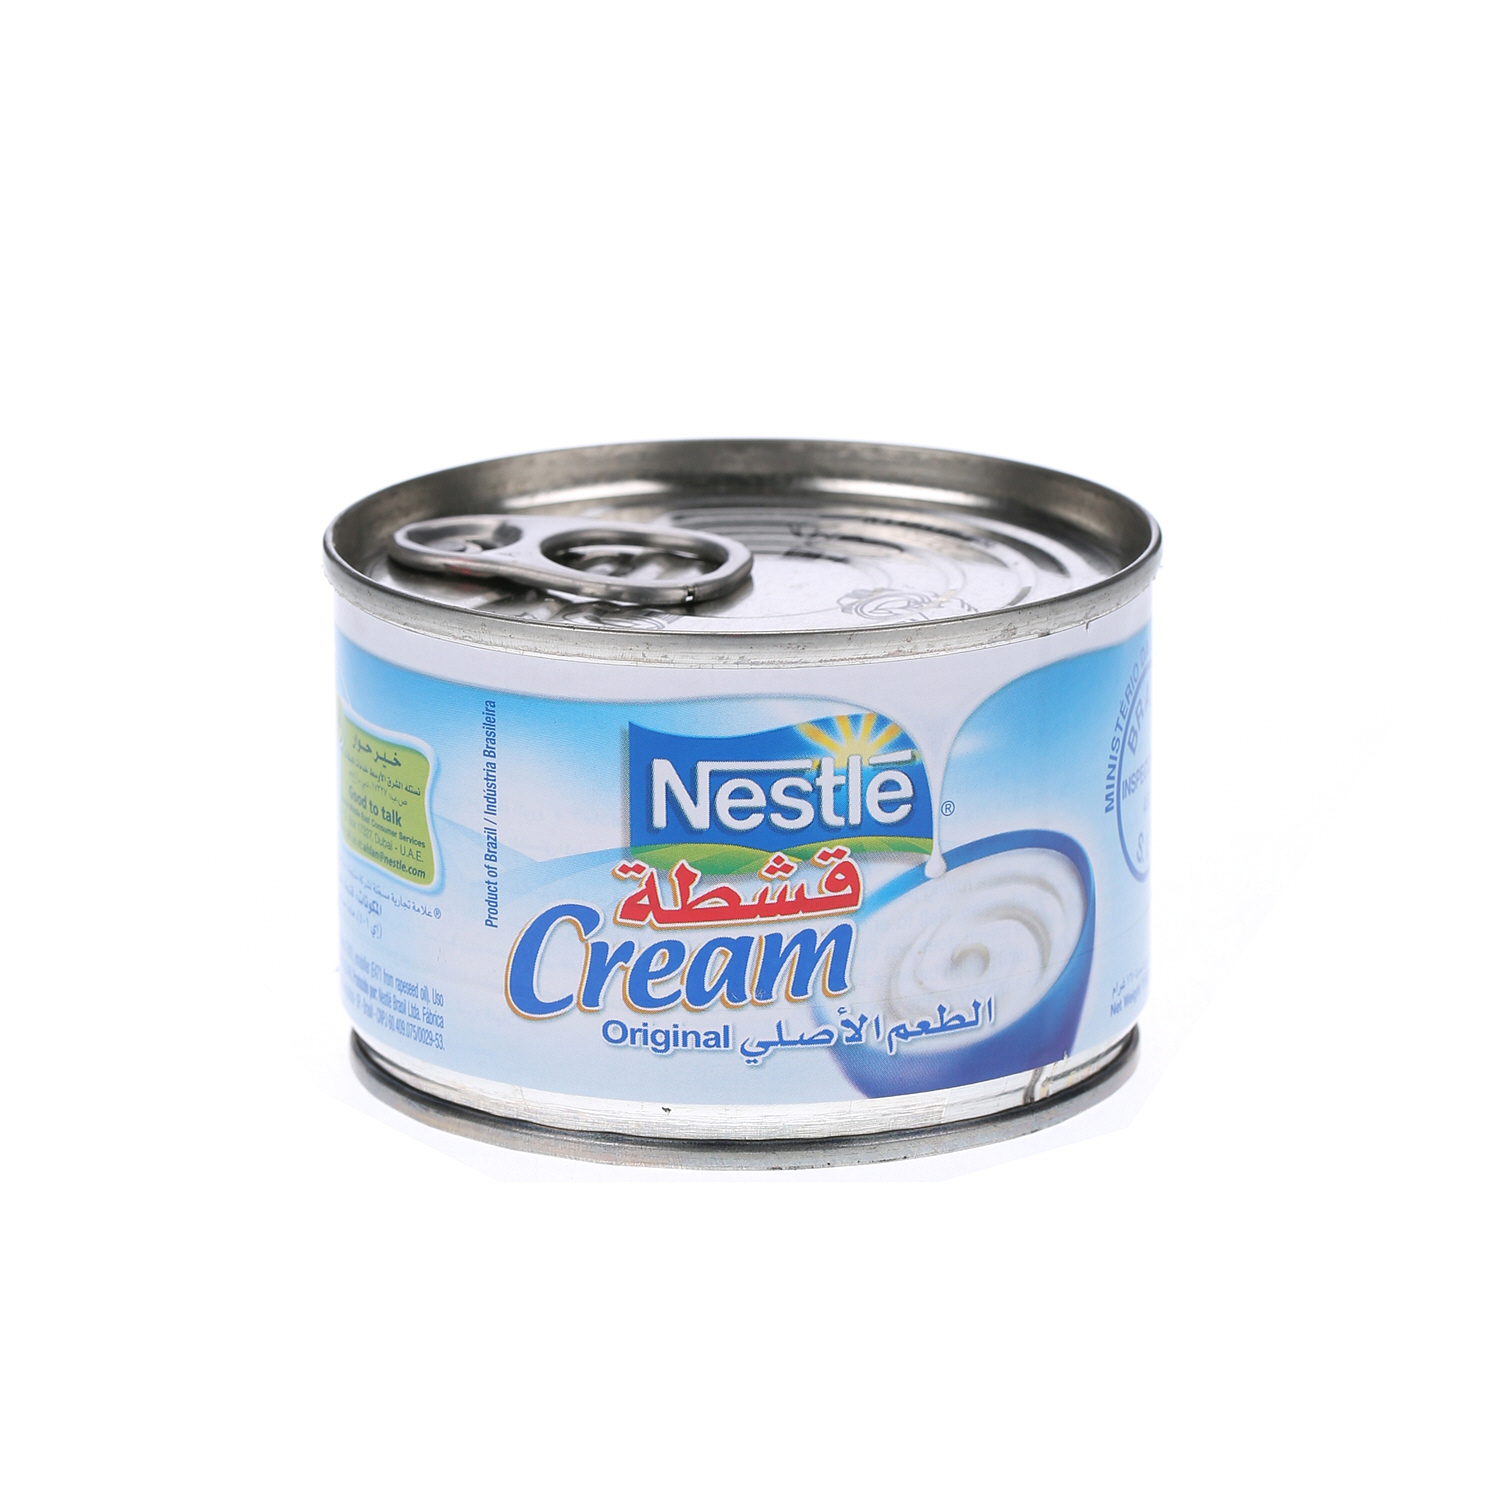 Nestlé Cream Original 160gm